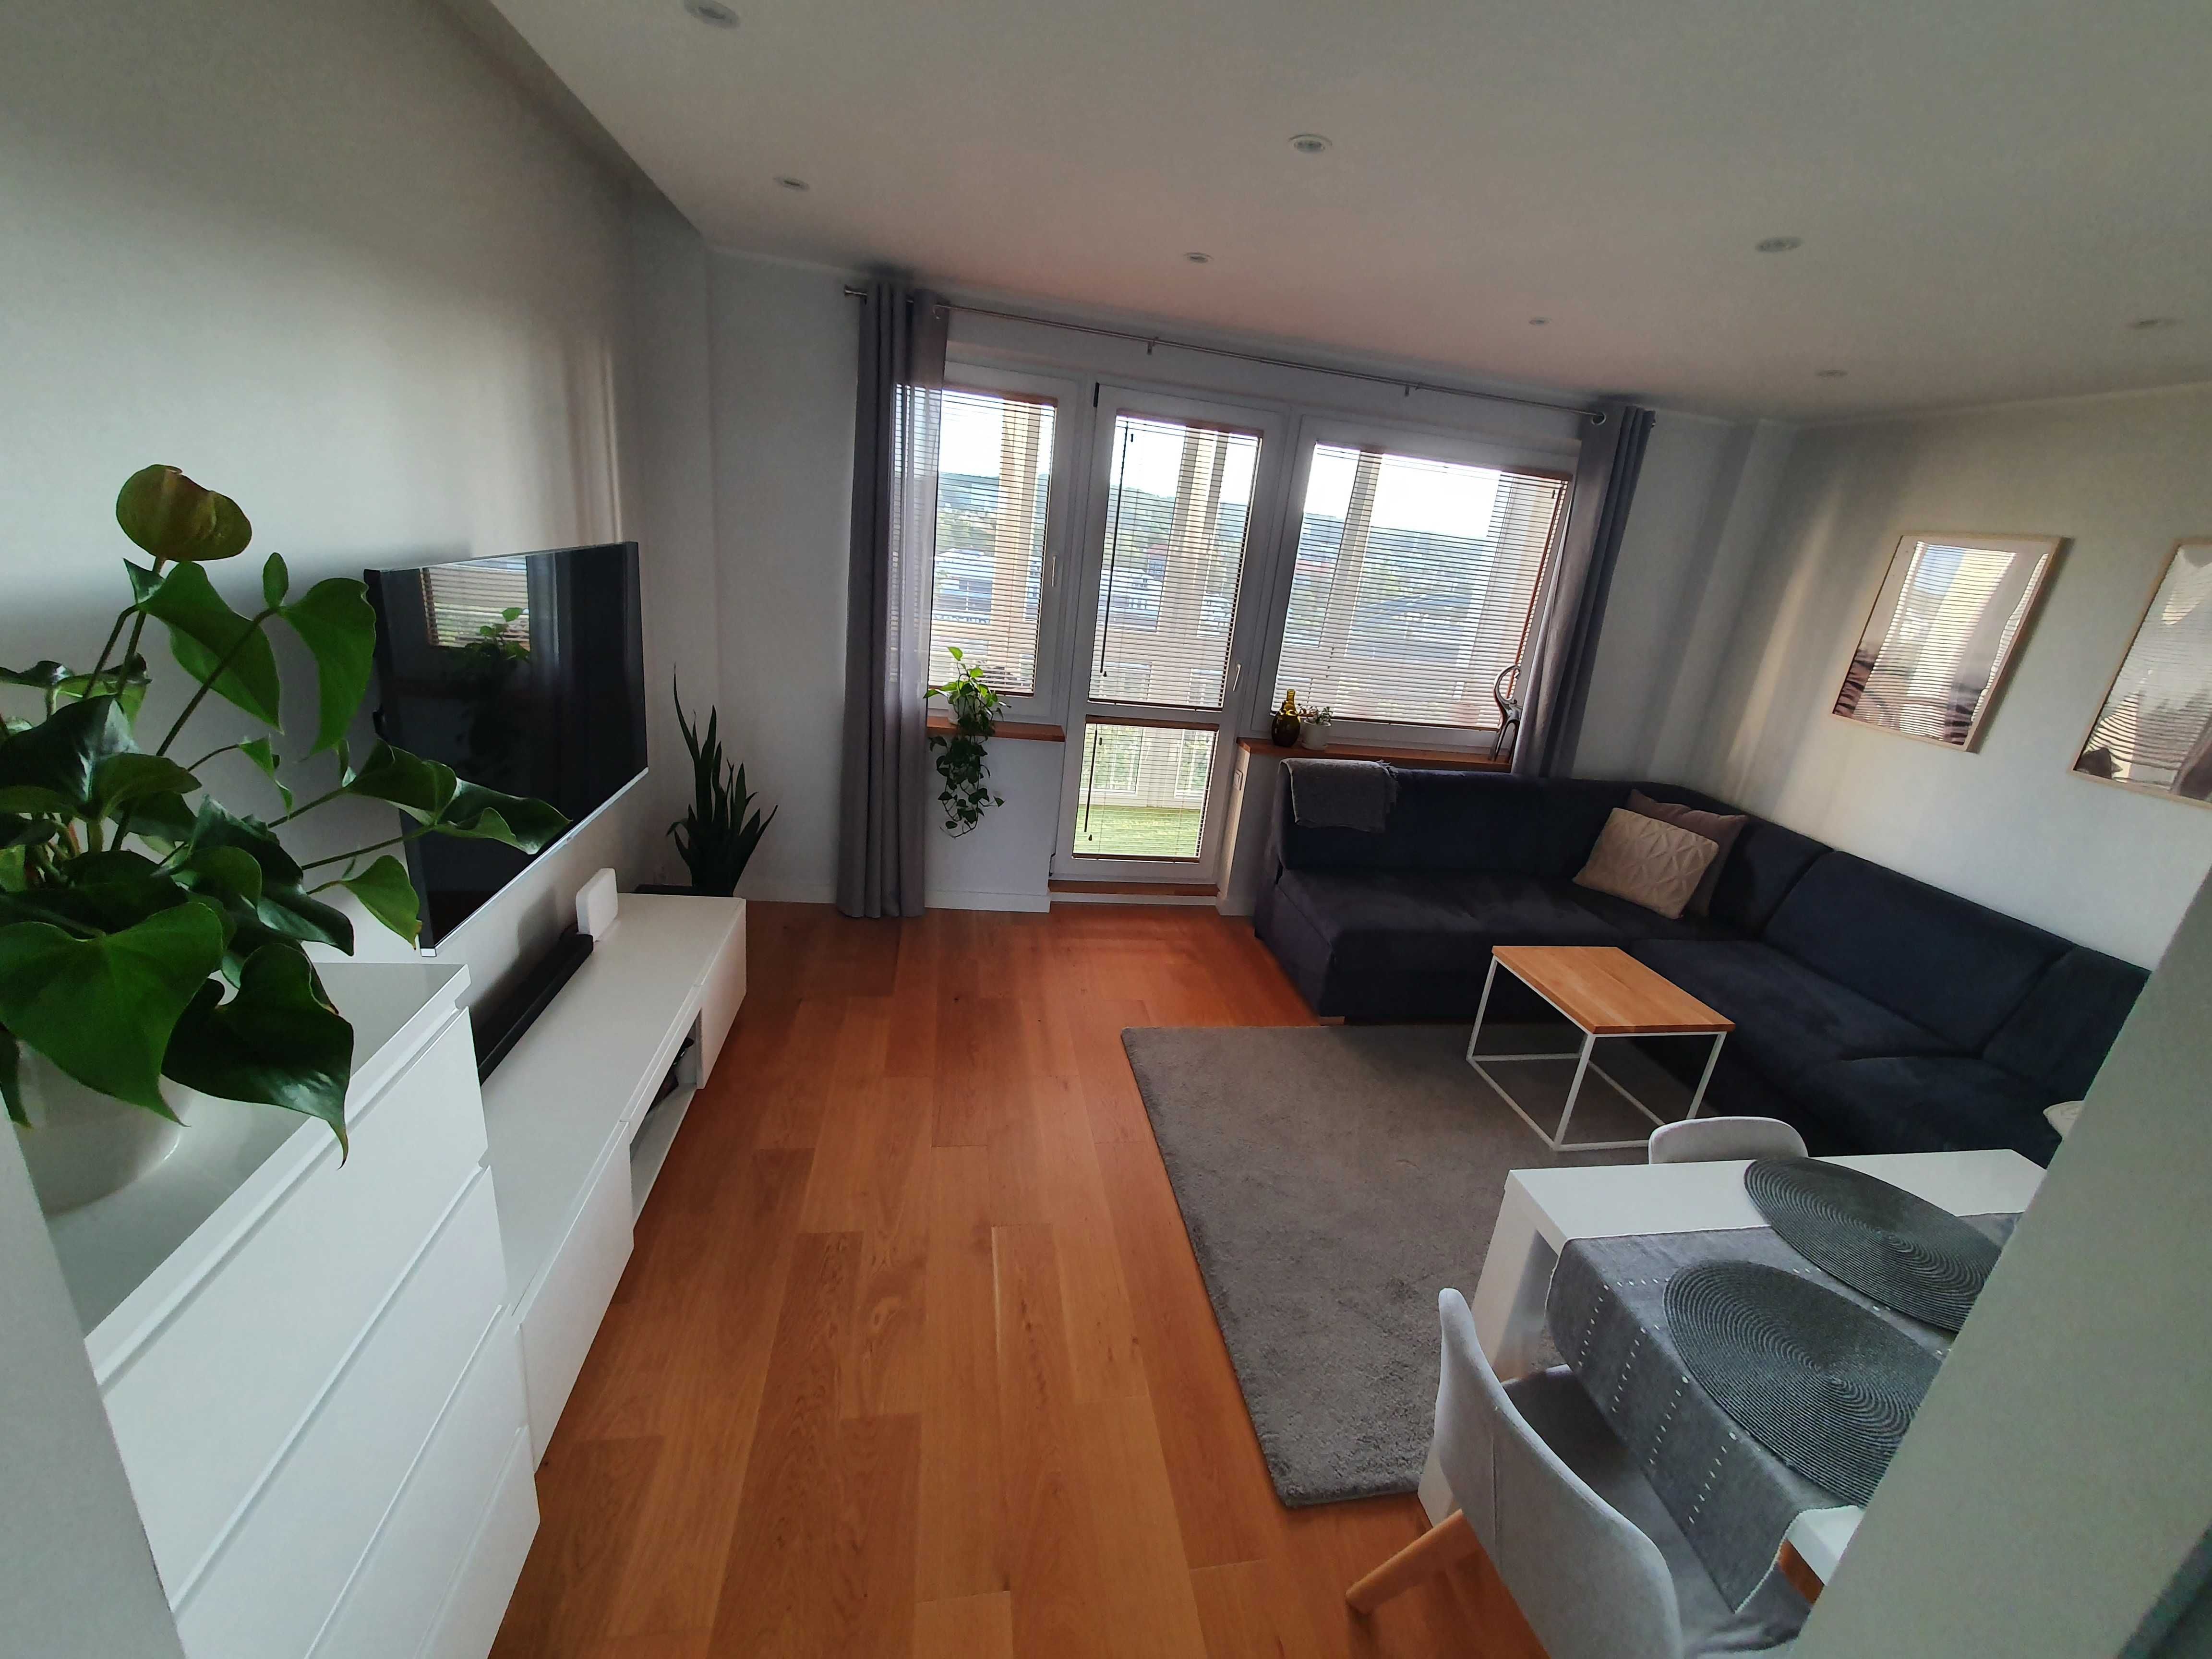 Apartament Gdańsk blisko morza wysoki standard wynajem krótkoterminowy